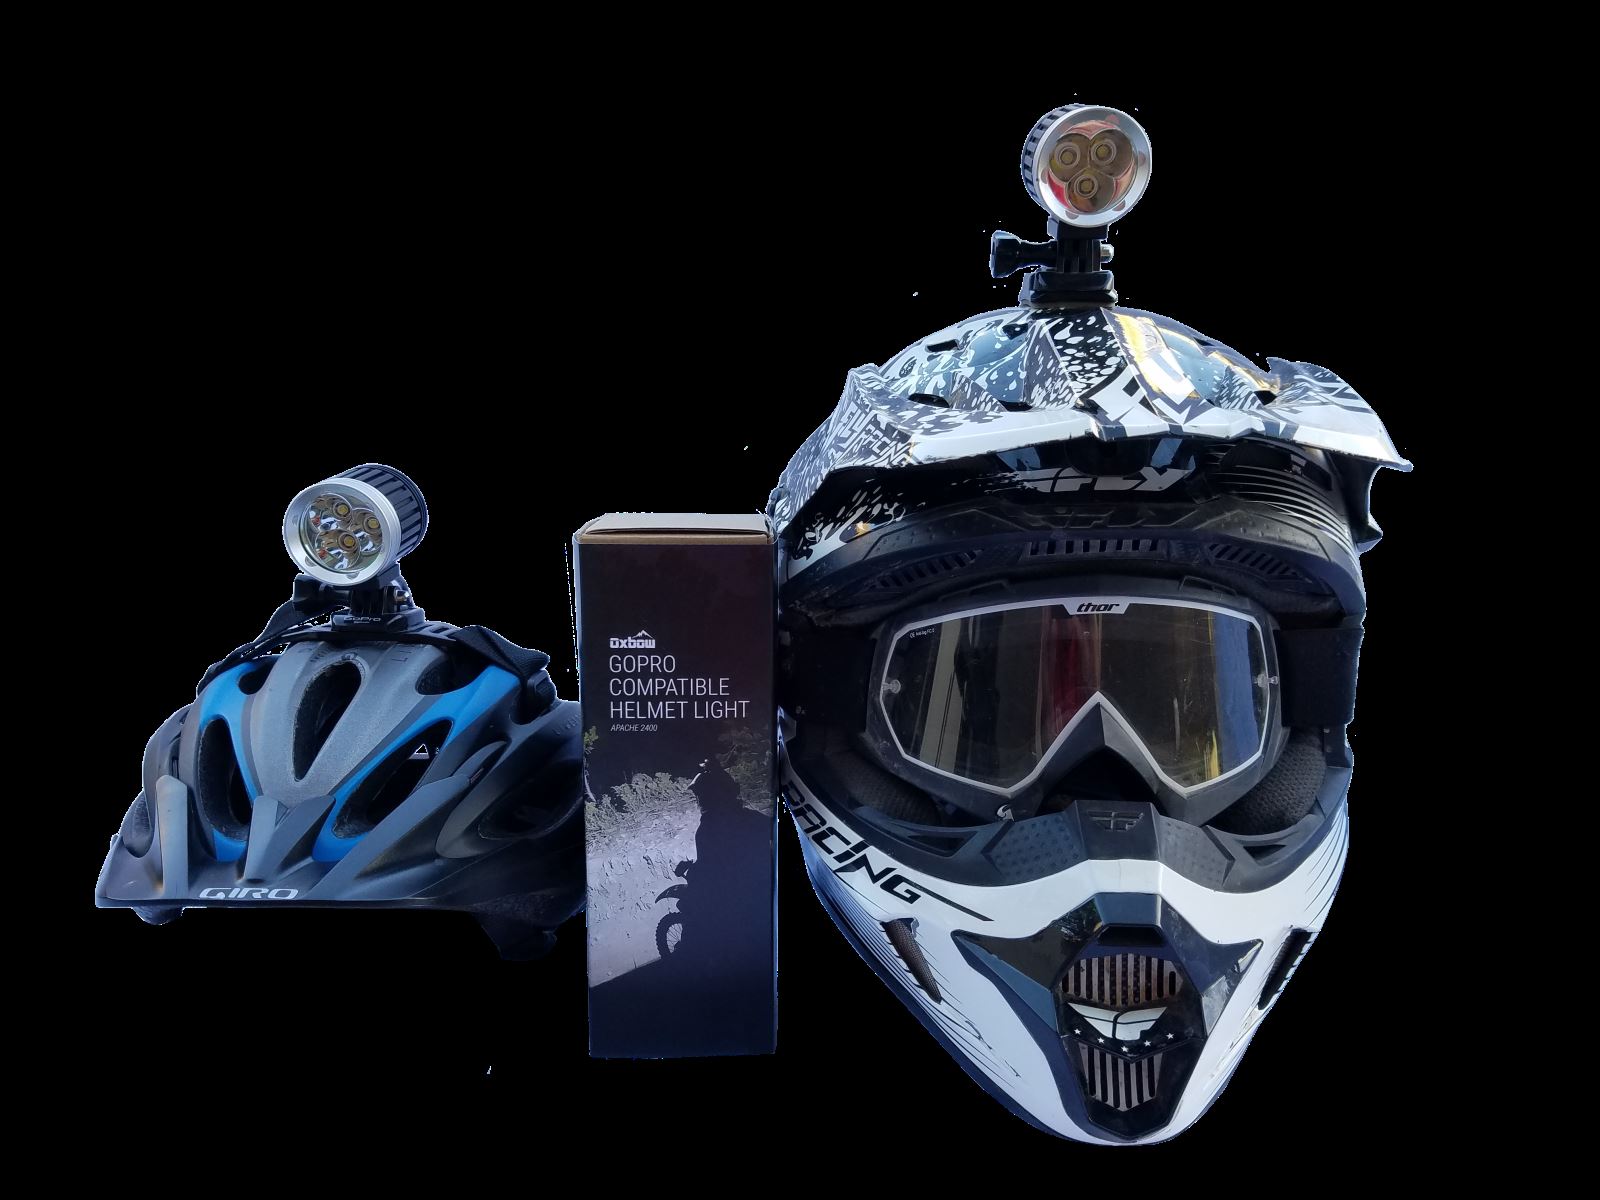 voyager dirt bike helmet light kit